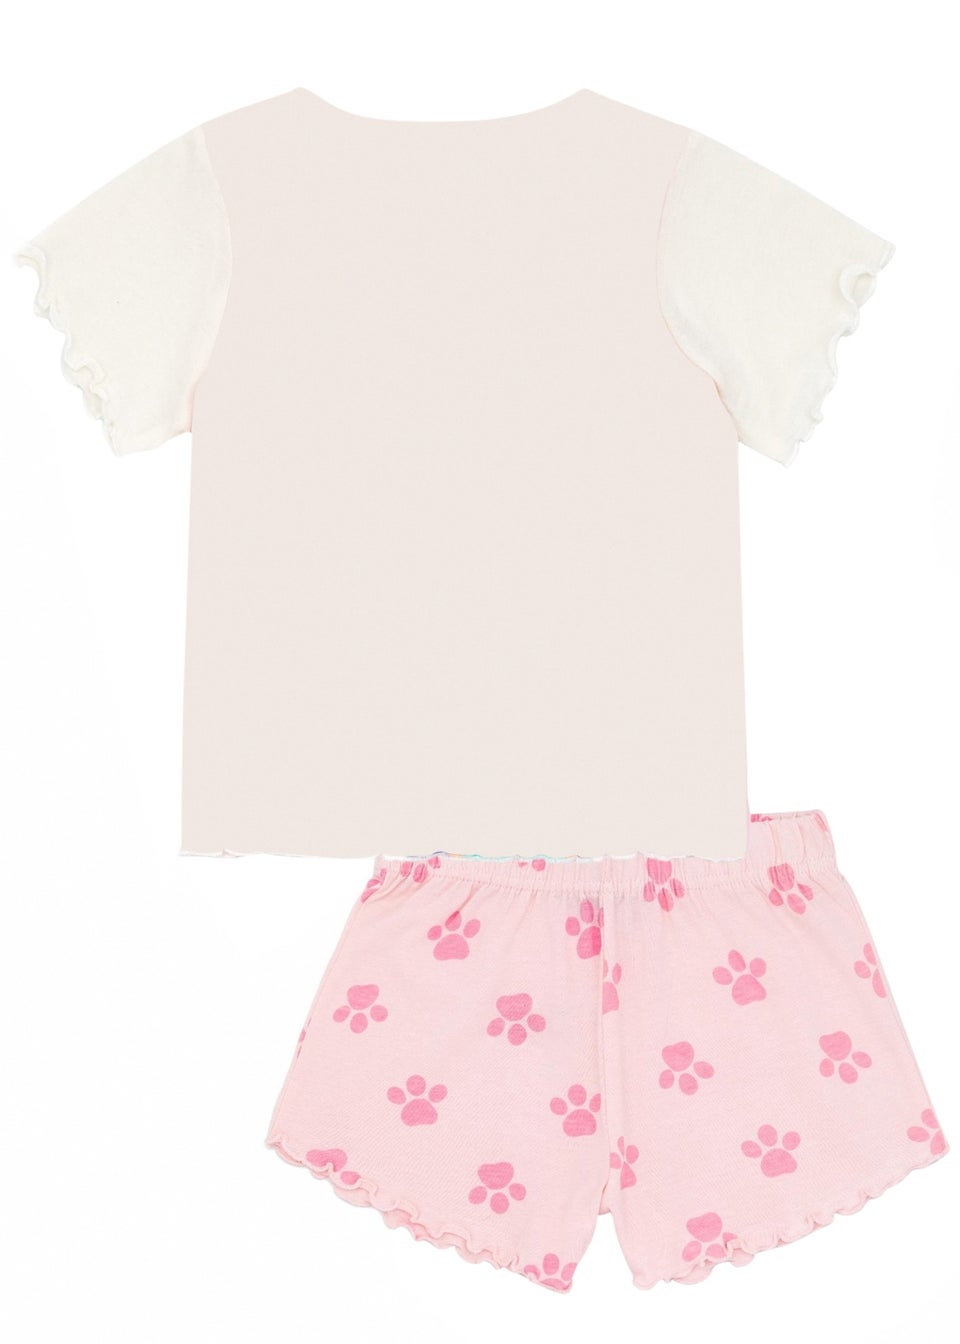 Paw Patrol Girls Pink Short-Sleeved Pyjama Set (12months -6yrs)